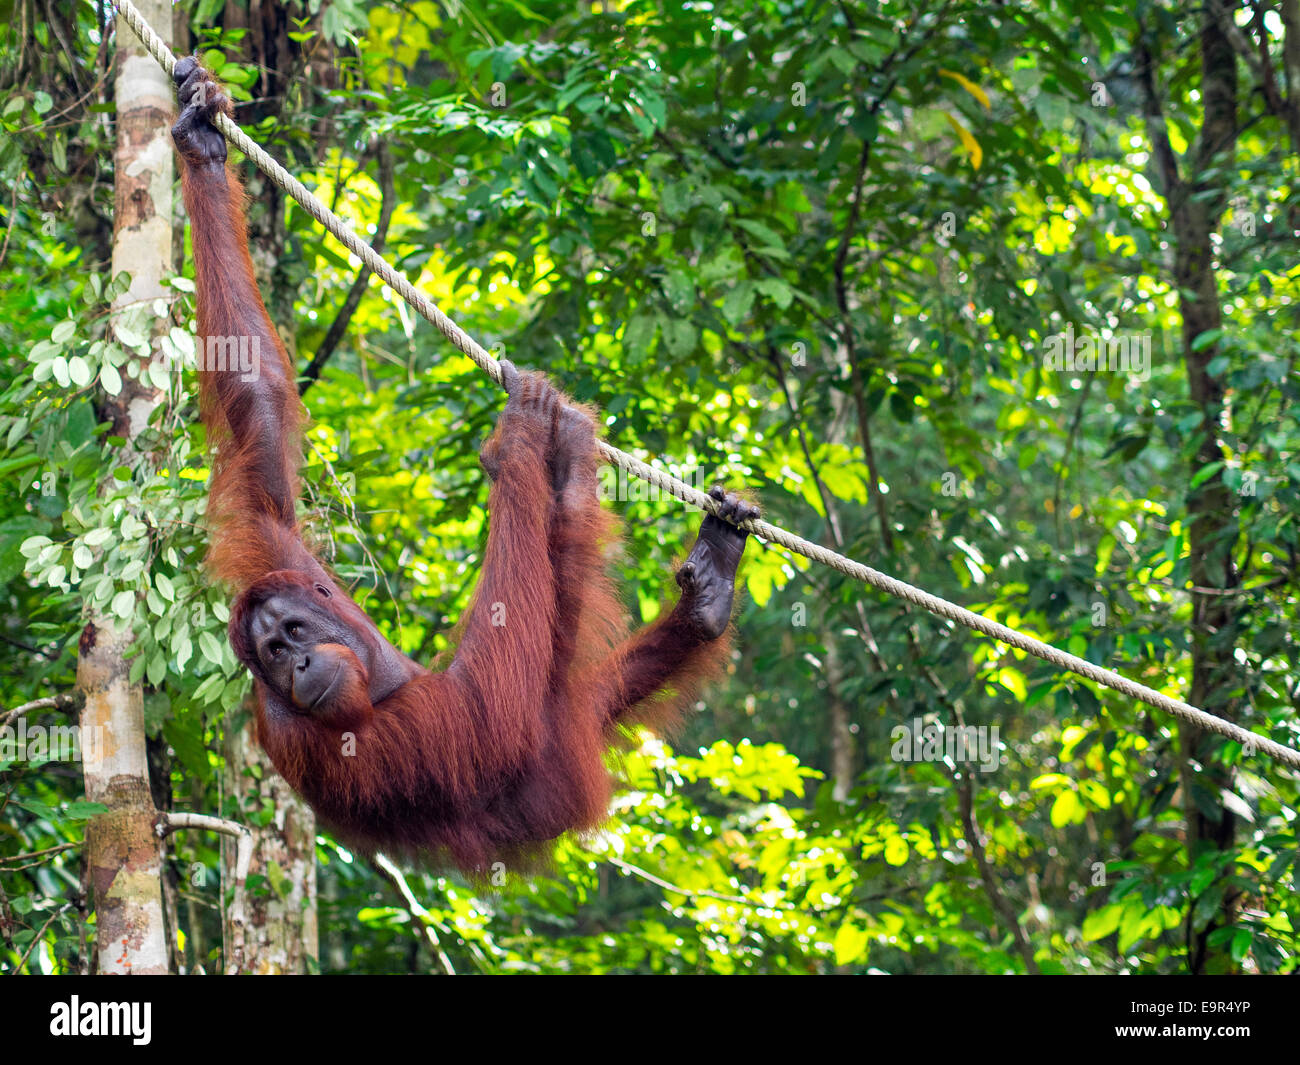 Macho de orangután de Borneo en la Reserva Natural de Semenggoh cerca de Kuching (Malasia). Foto de stock